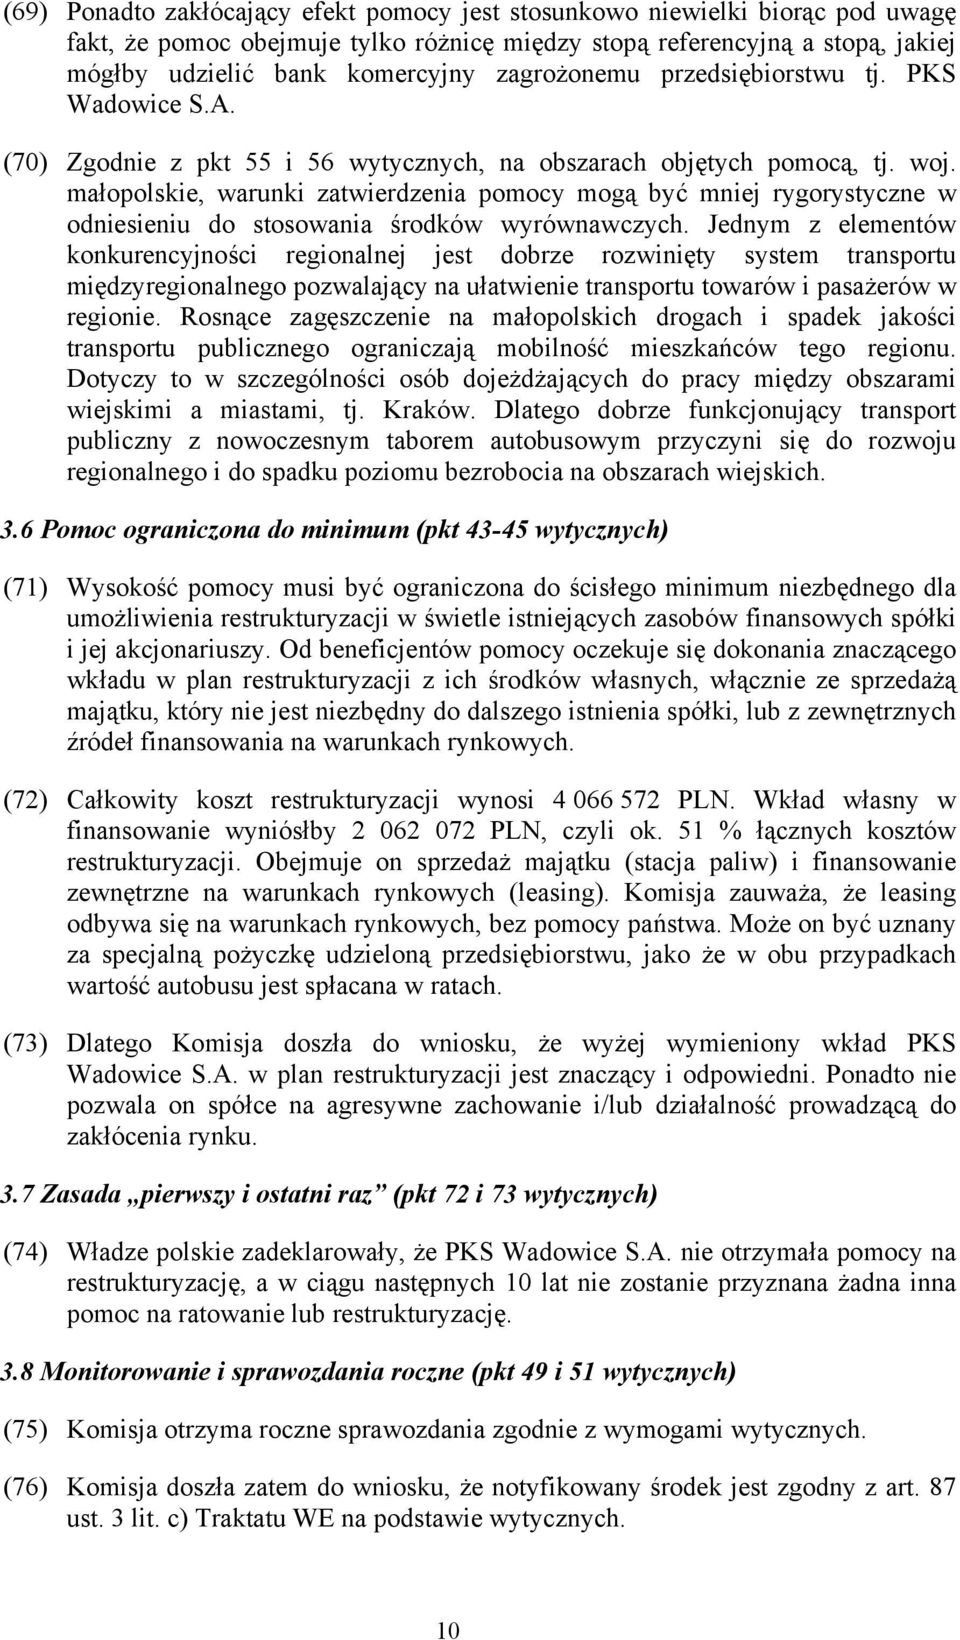 małopolskie, warunki zatwierdzenia pomocy mogą być mniej rygorystyczne w odniesieniu do stosowania środków wyrównawczych.